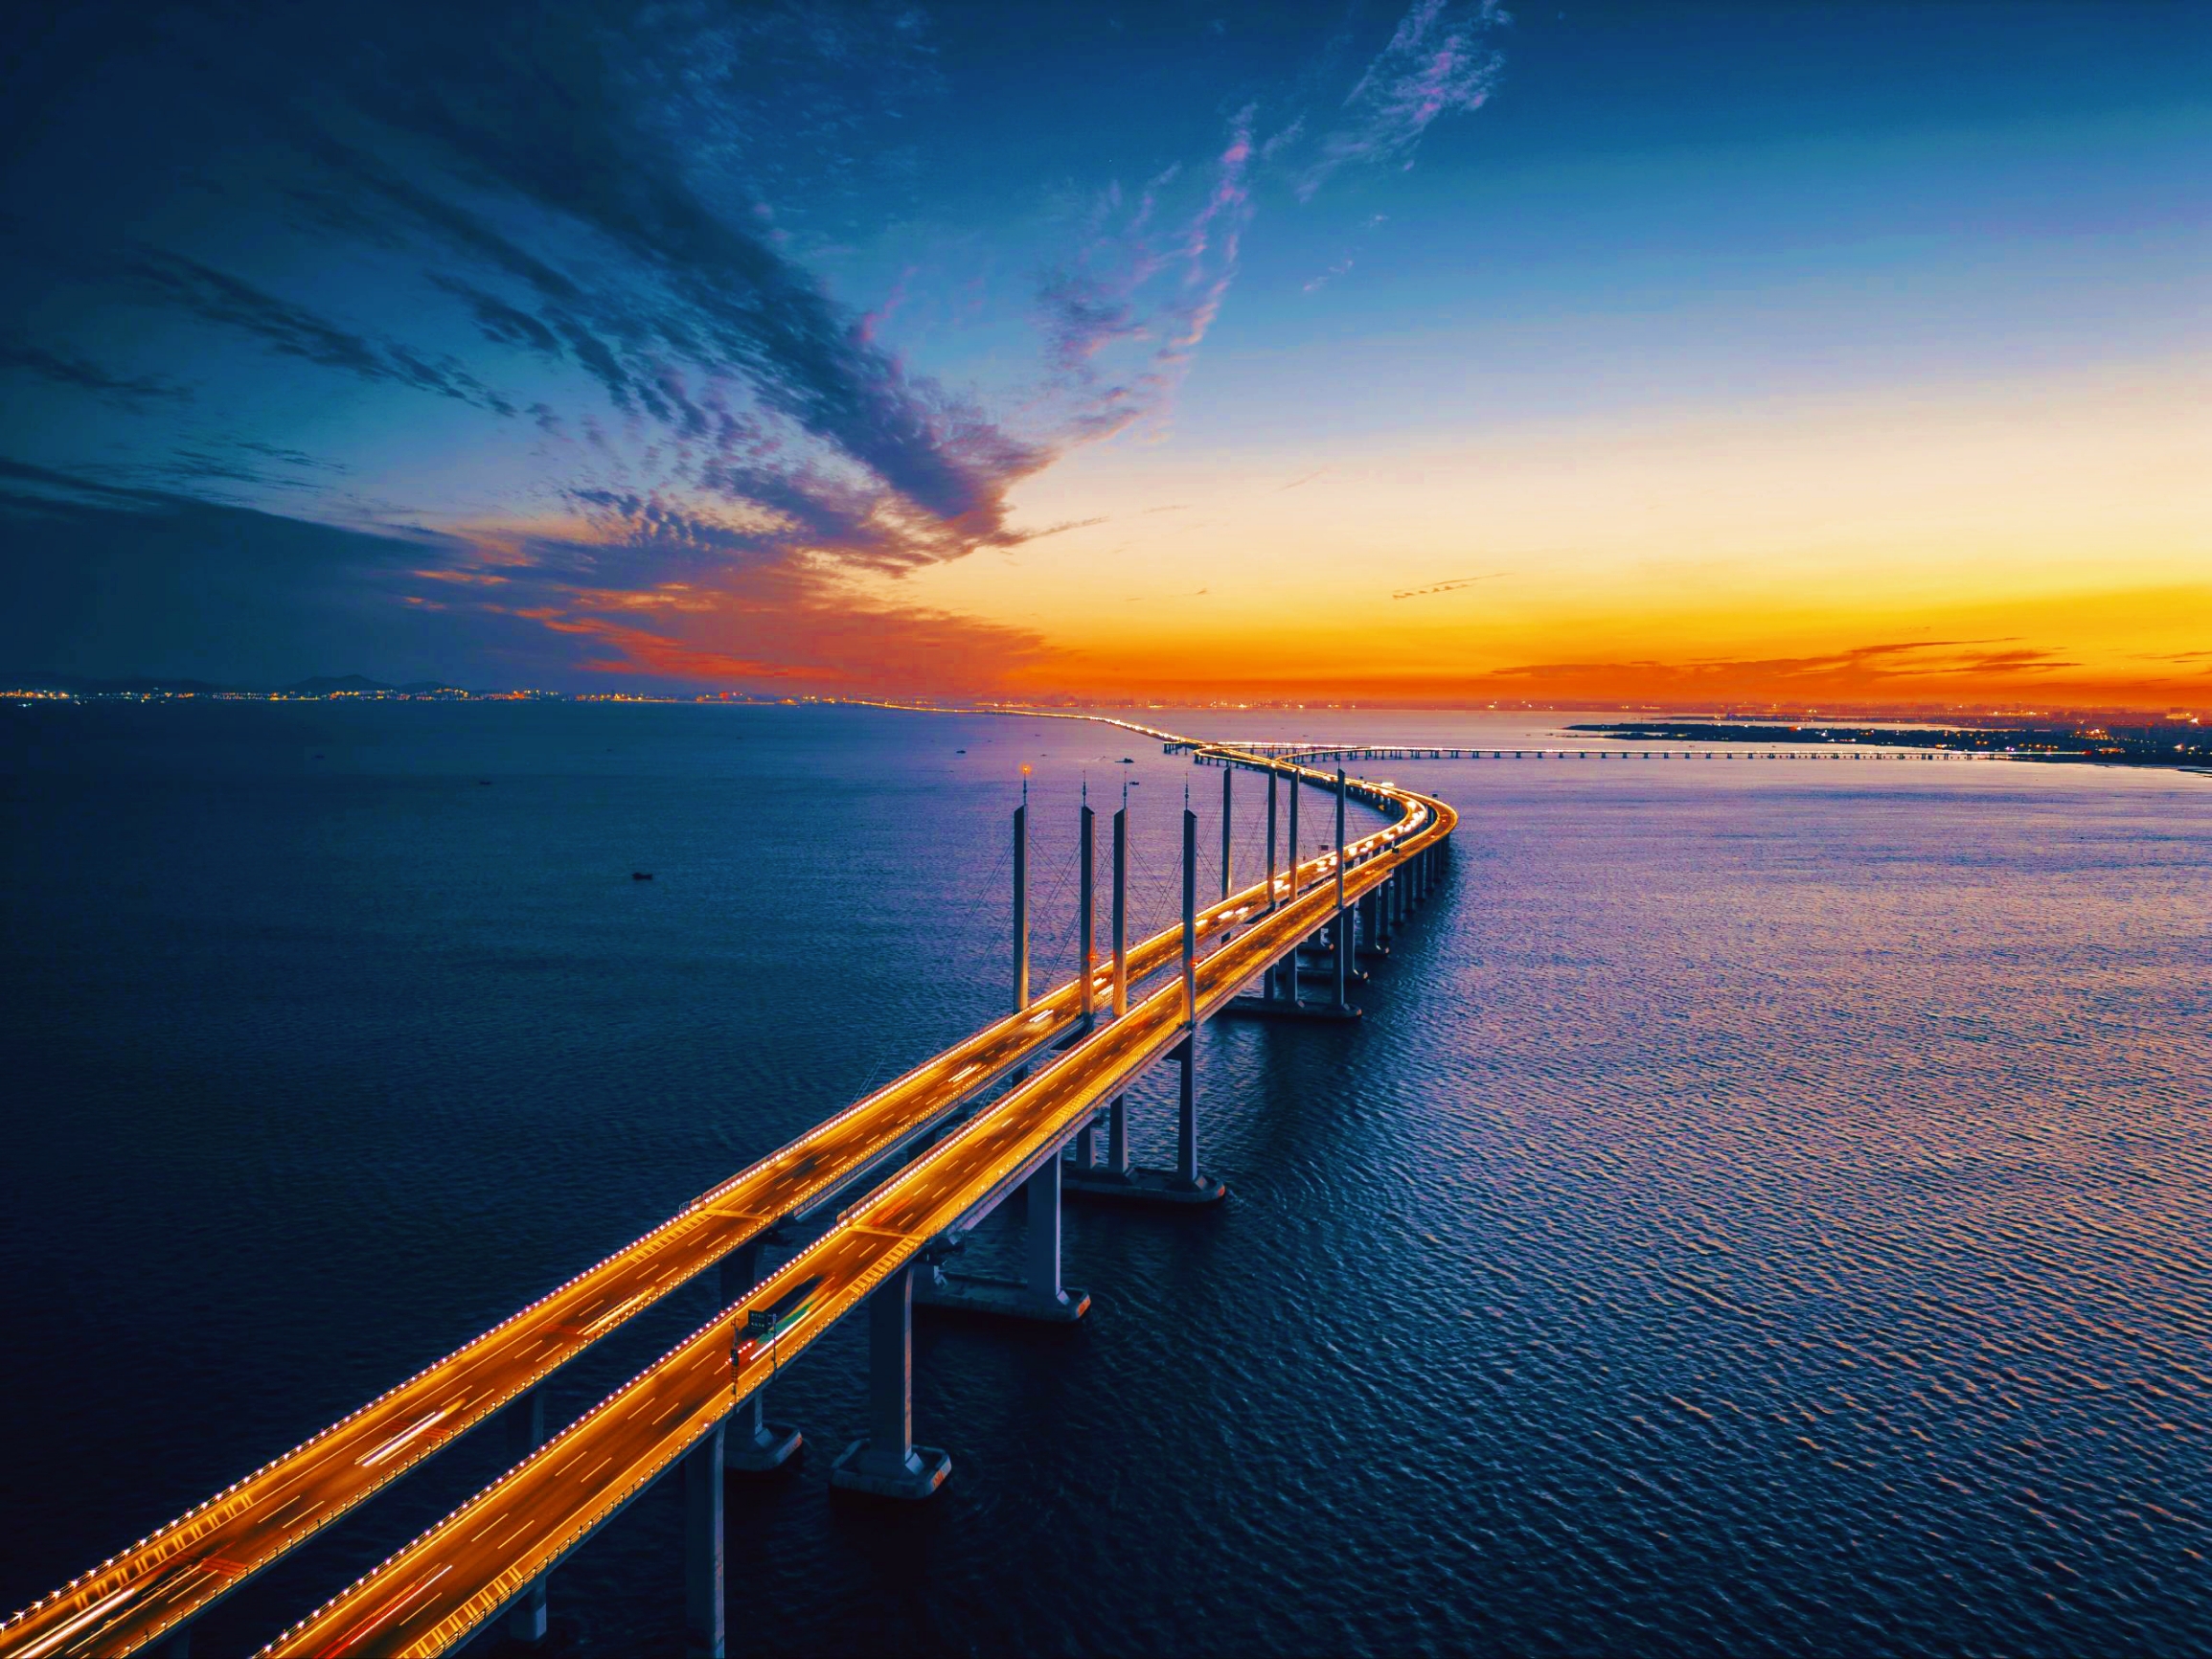 厄勒海峡大桥：连接瑞典与丹麦的壮丽之旅🌉 厄勒海峡大桥，这座壮观的跨海大桥，不仅是斯堪的纳维亚地区的